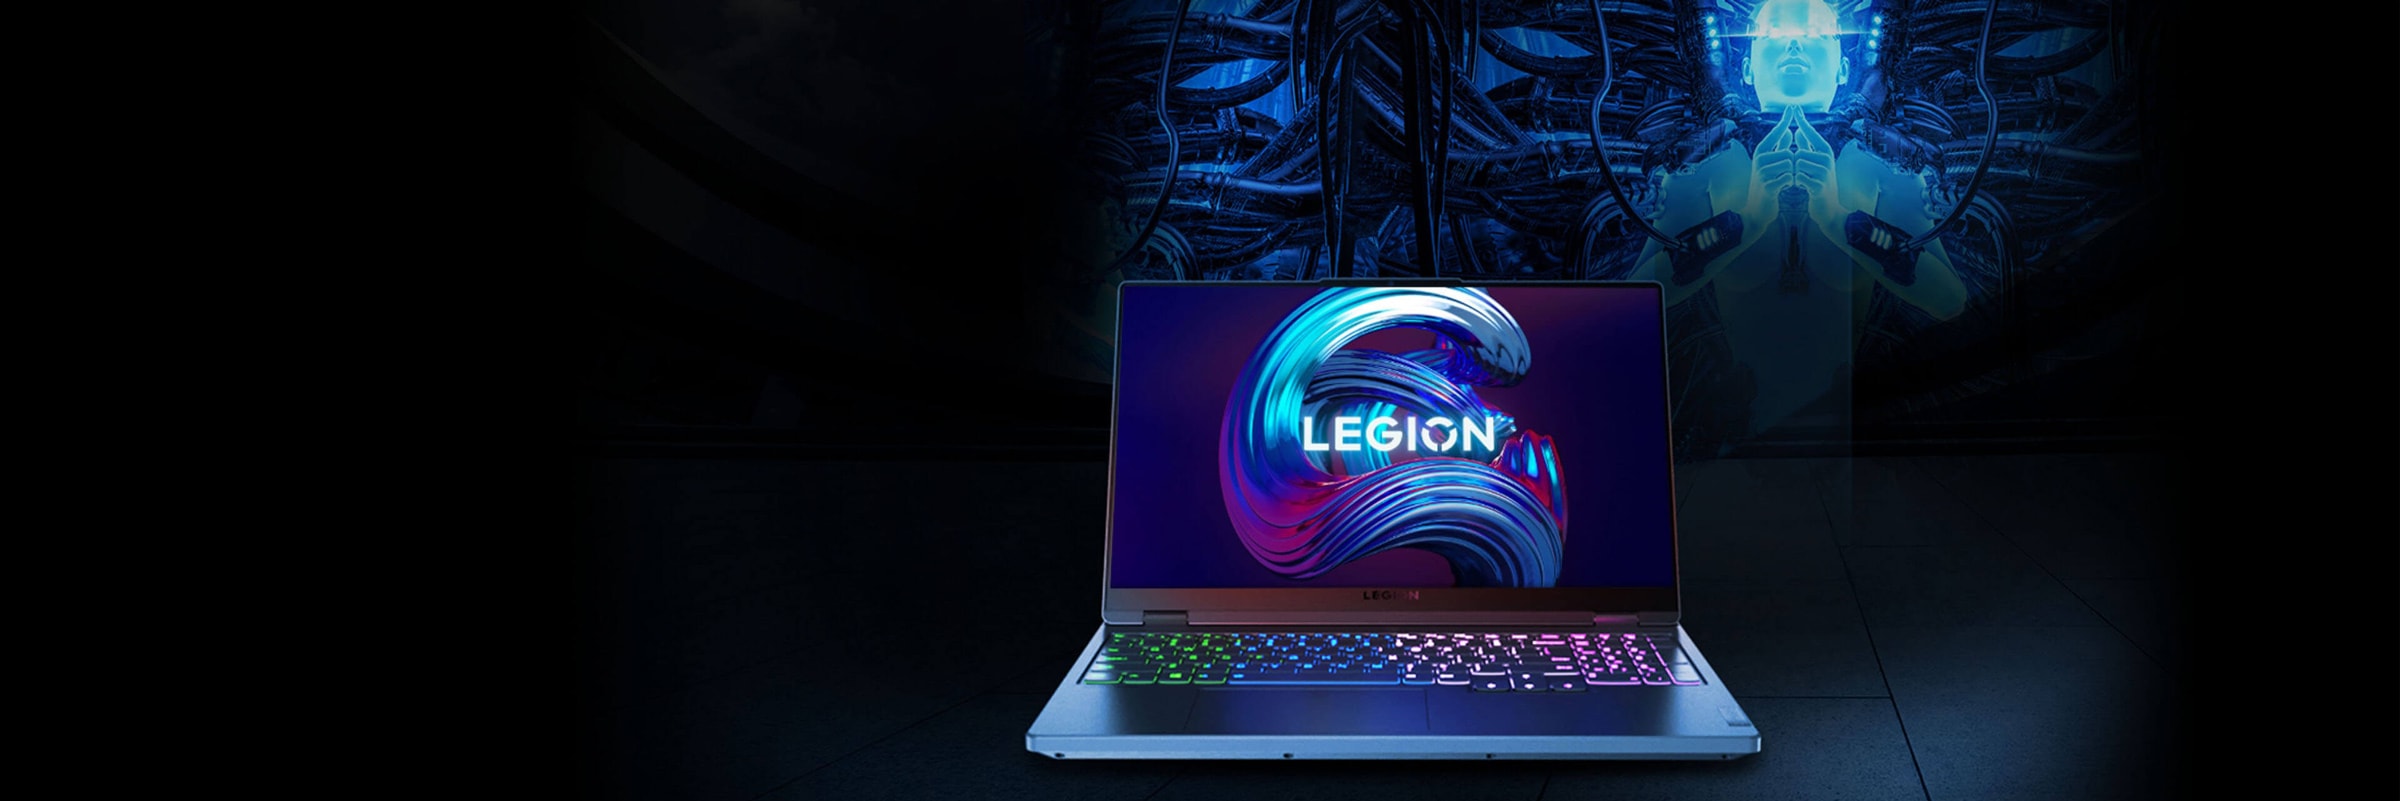 Вид спереди на ноутбук Legion, открытый на 90 градусов, с изображением экрана и клавиатуры.